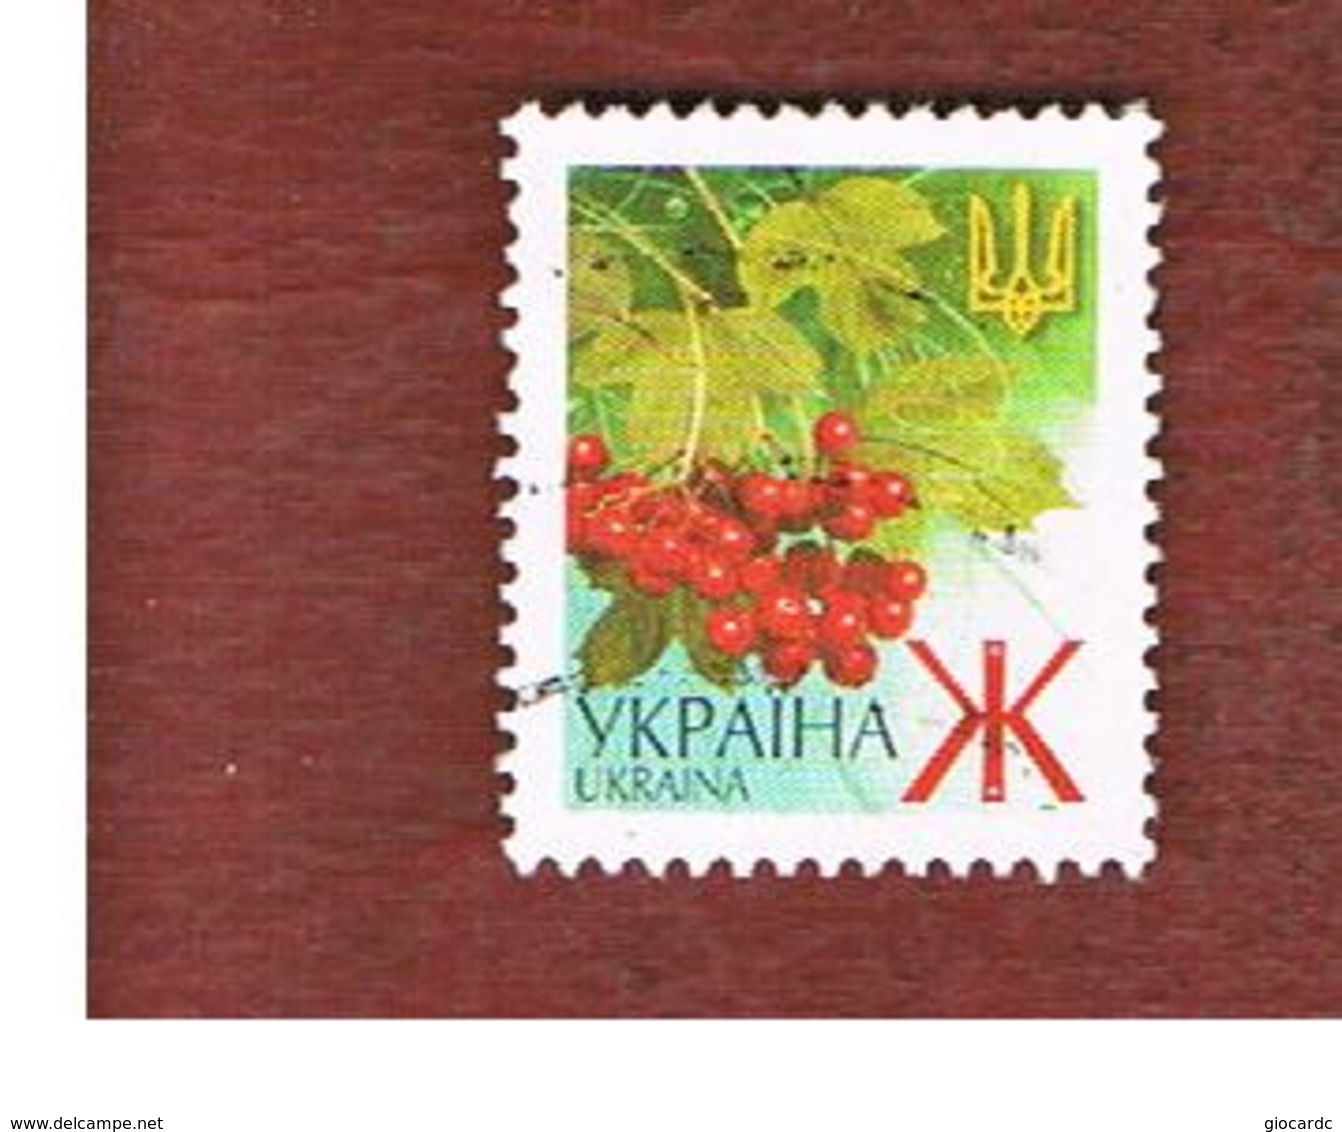 UCRAINA (UKRAINE)  -  MI 436AII   -  2003  PLANTS: GUELDER-ROSE   -   USED - Ukraine